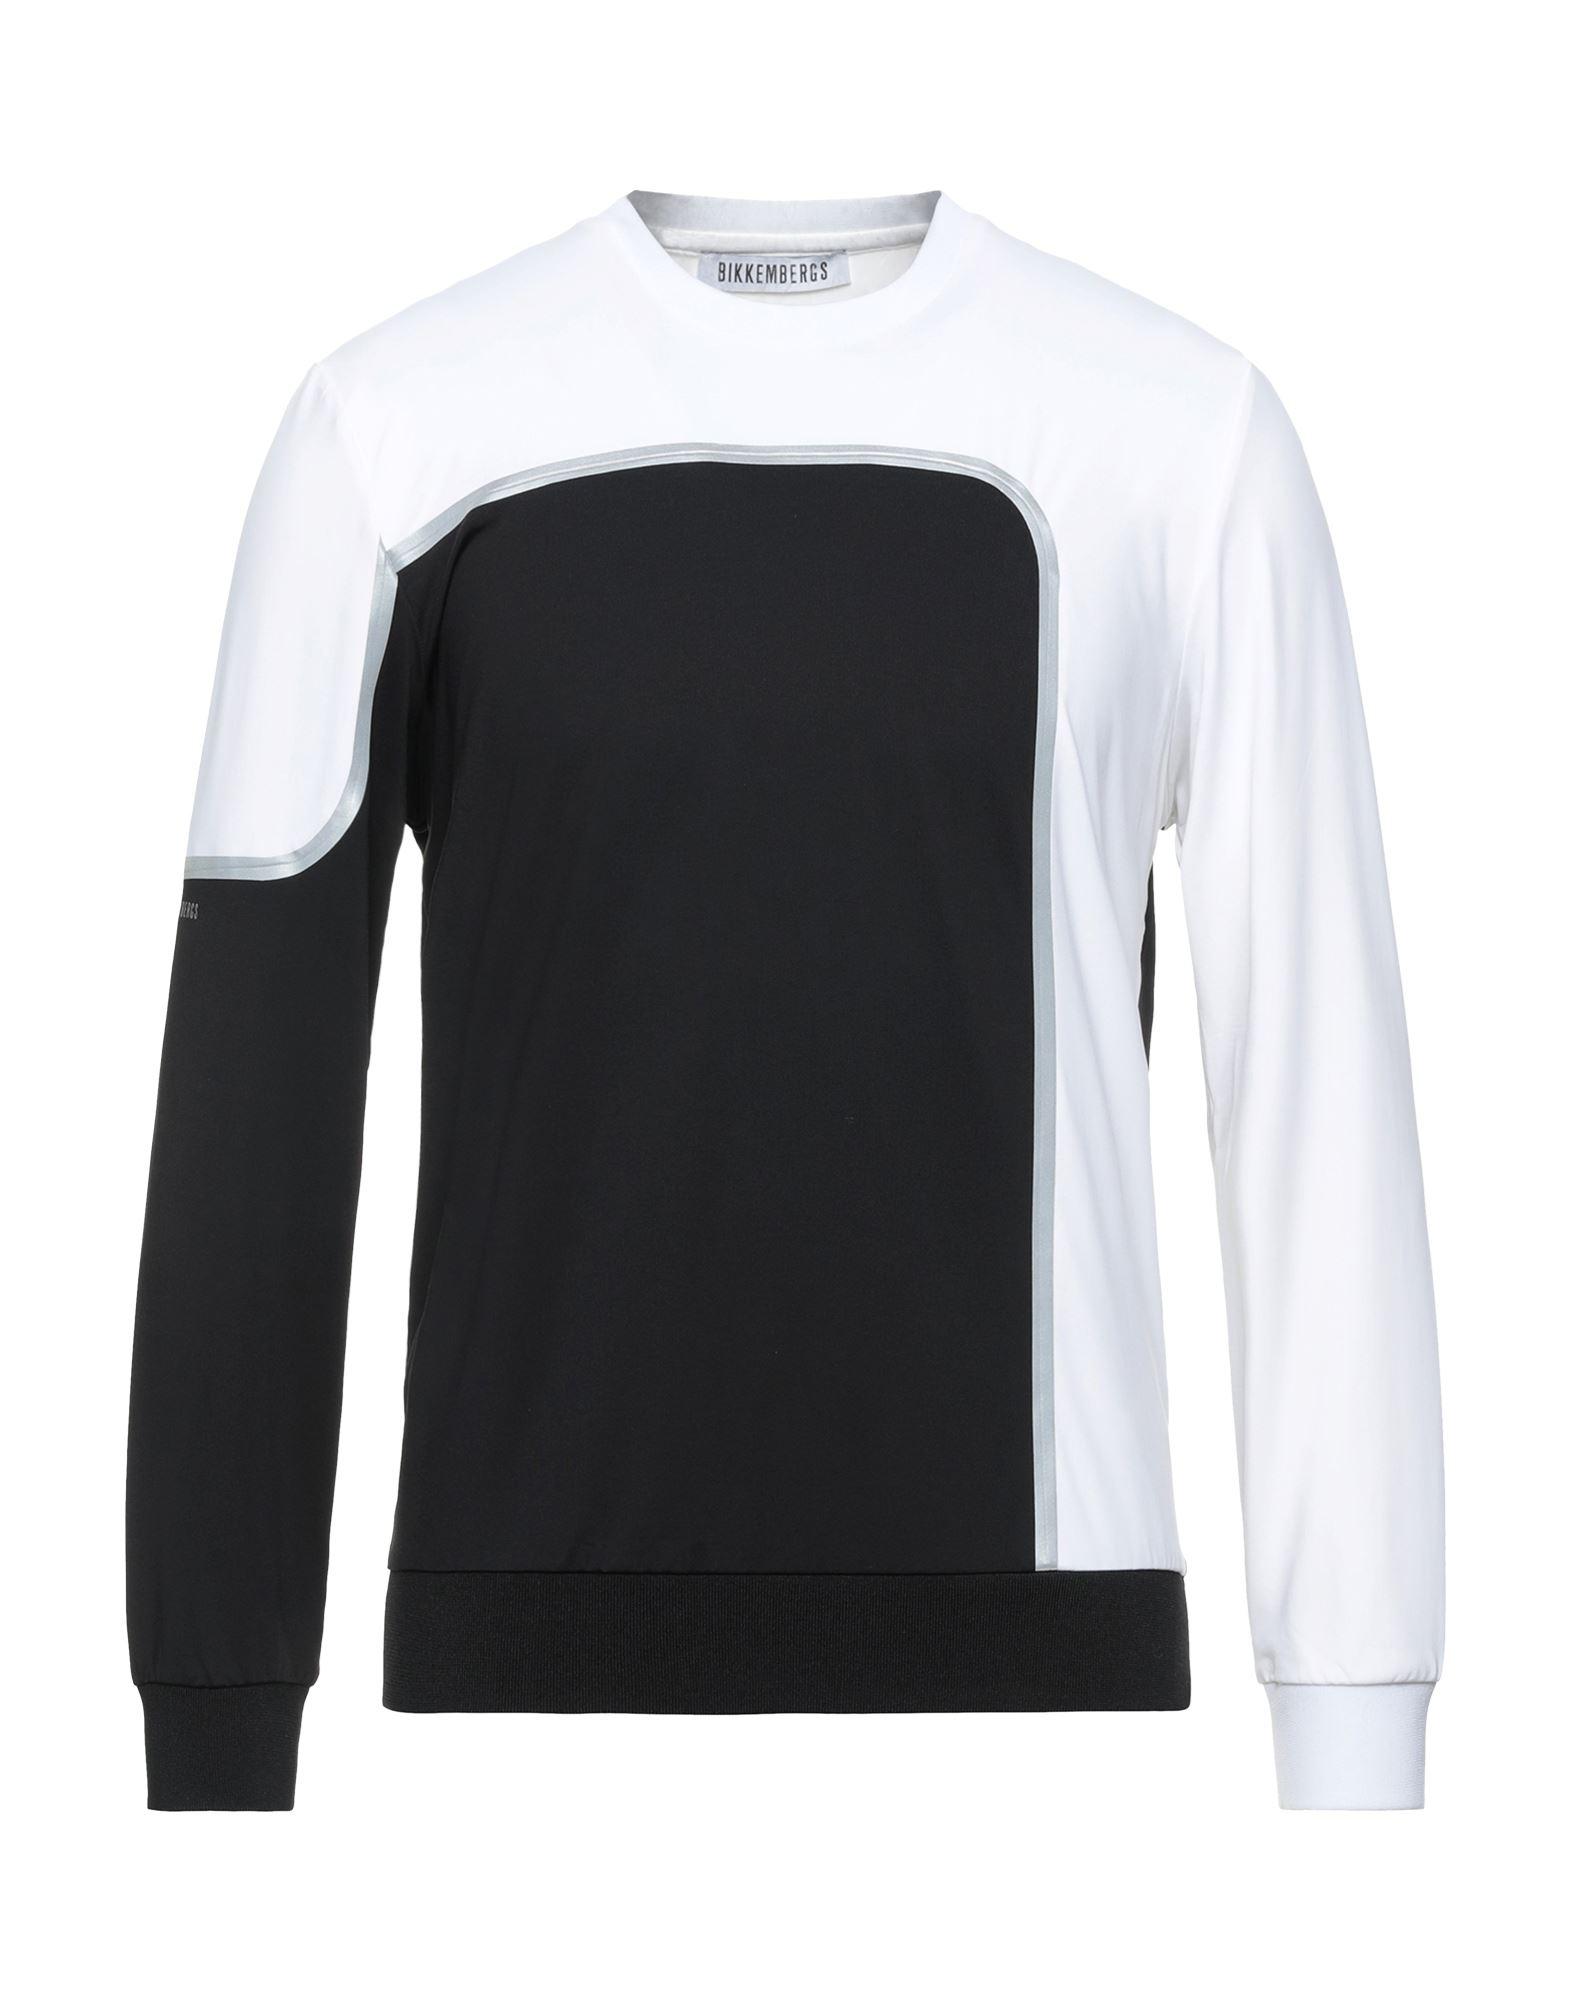 Camiseta Bikkembergs de Tejido sintético de color Negro para hombre Hombre Ropa de Camisetas y polos de Camisetas de manga corta 